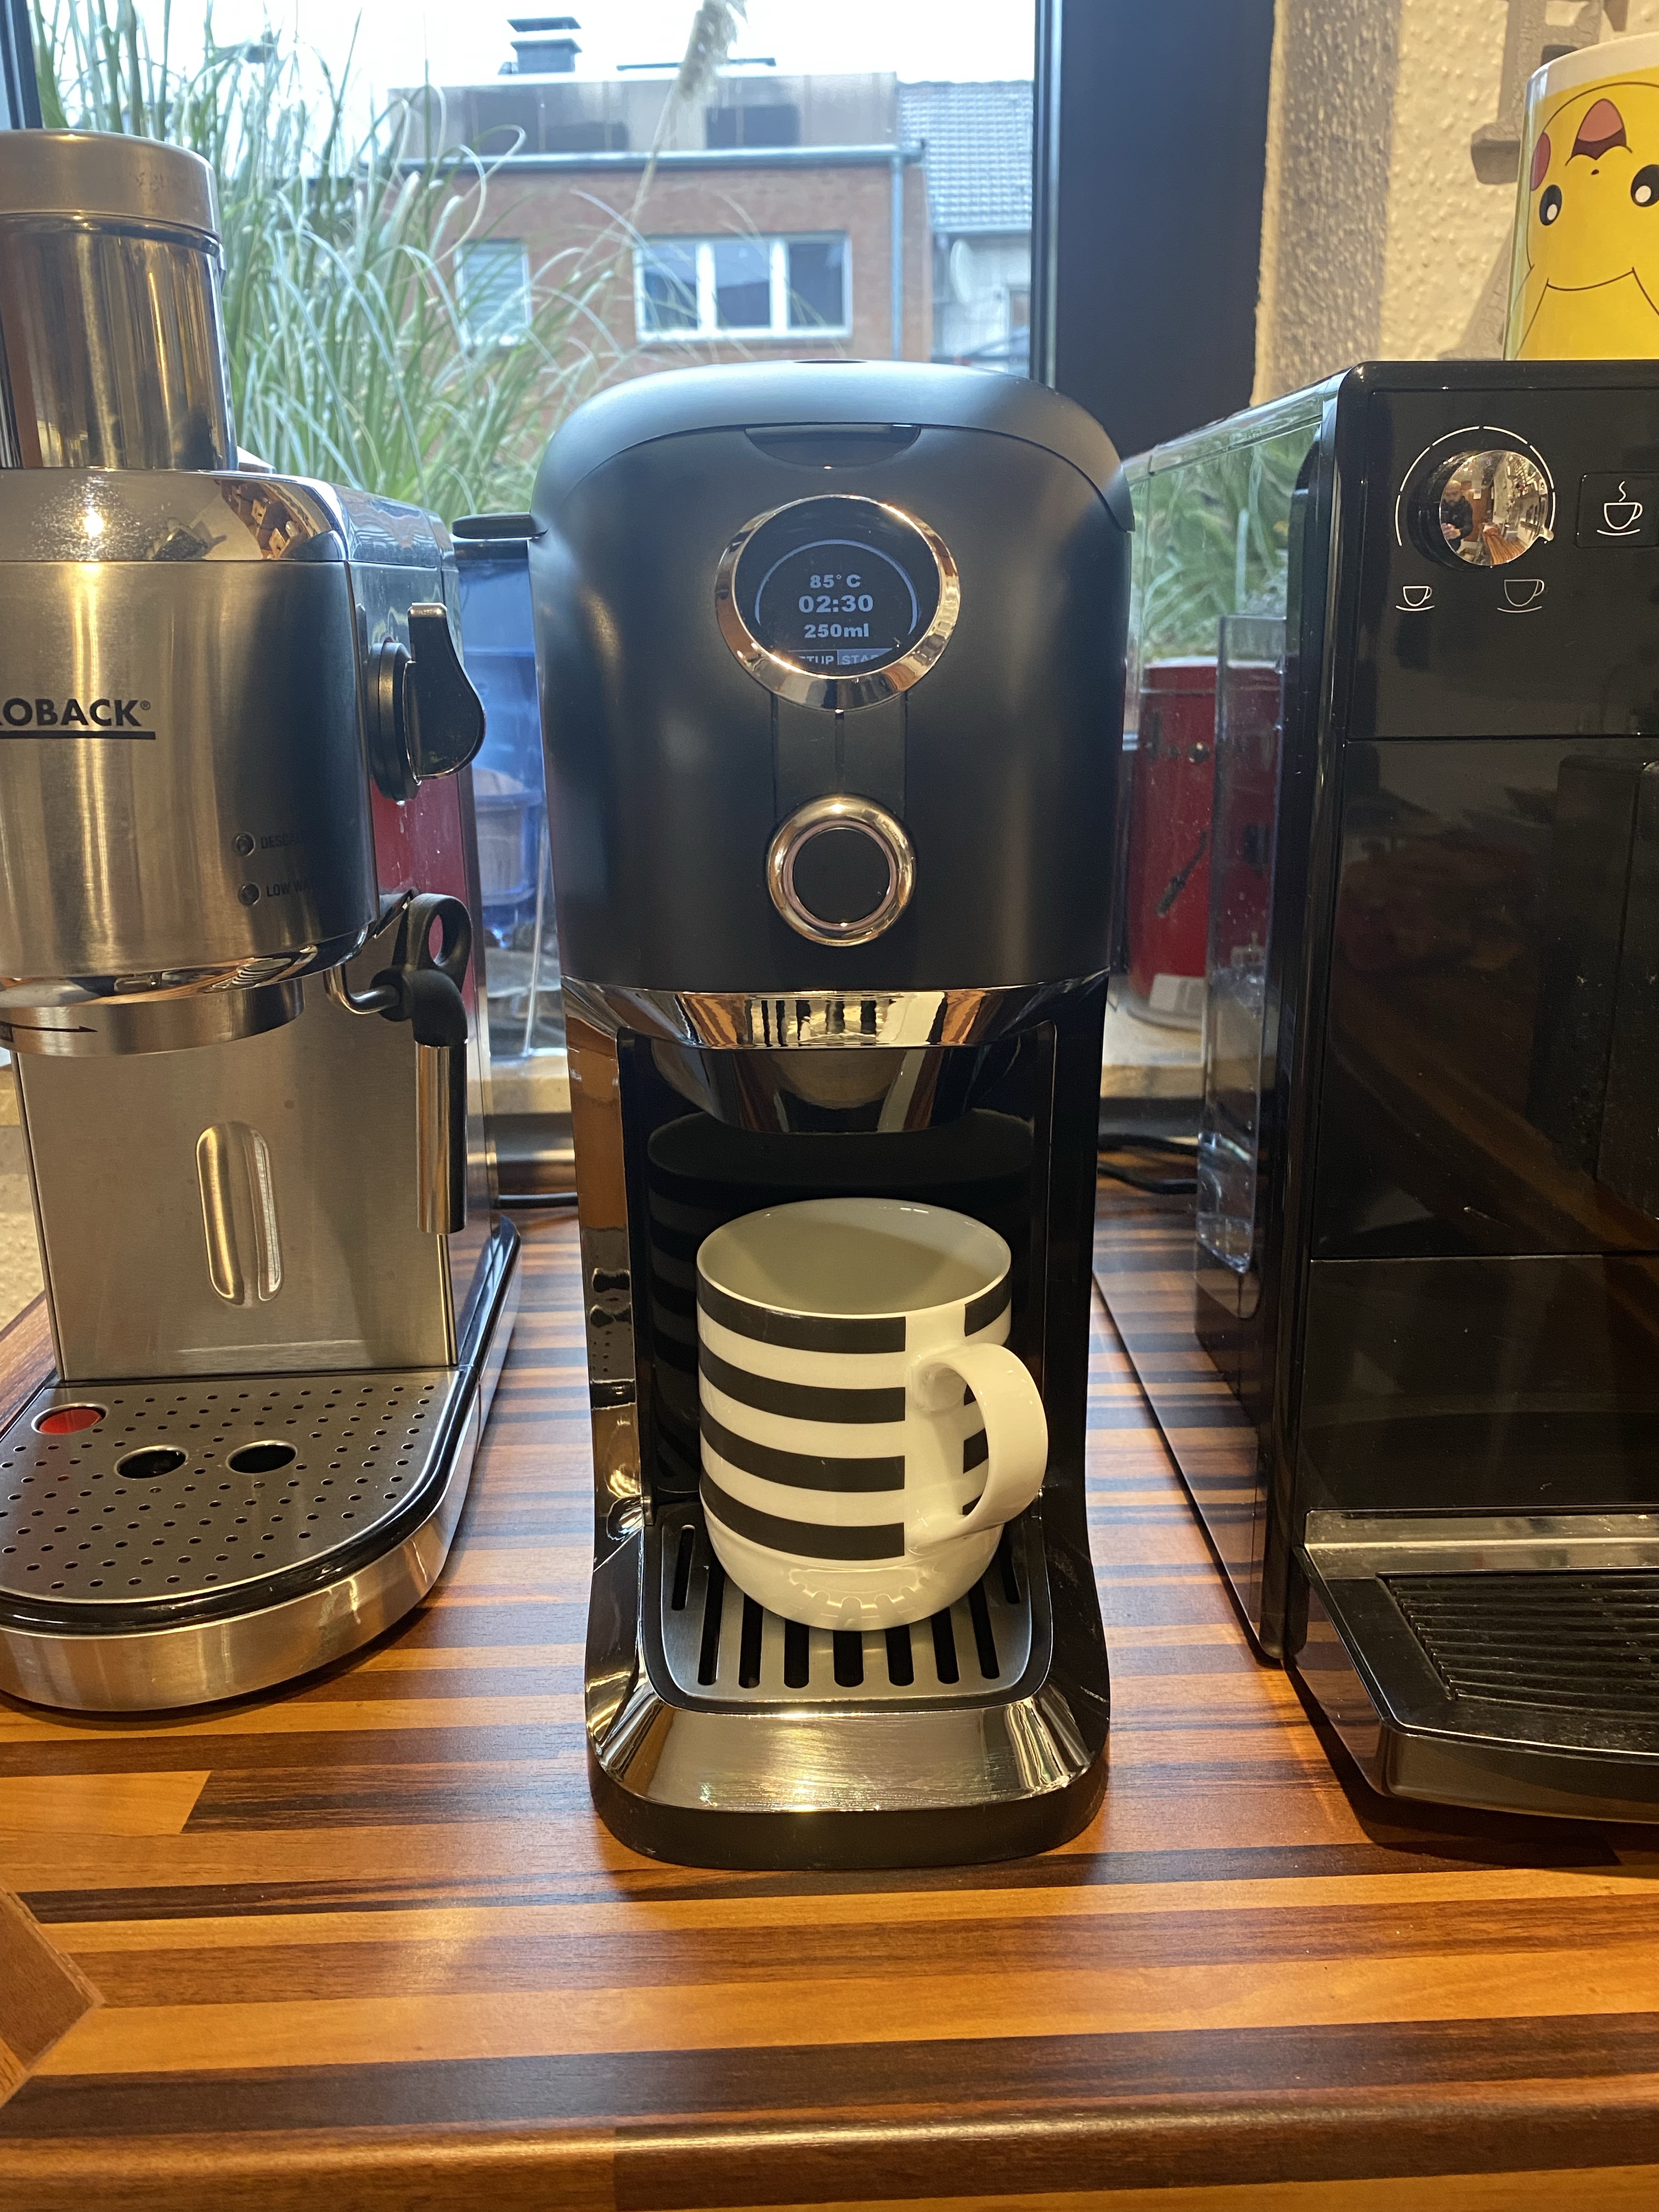 Die schwarz-chromfarbene BRU Teemaschine mit schwarz-weiß gestreifter 250ml Tasse zwischen einem Gastrobak Siebträger und einem Melitta Kaffeevollautomaten.